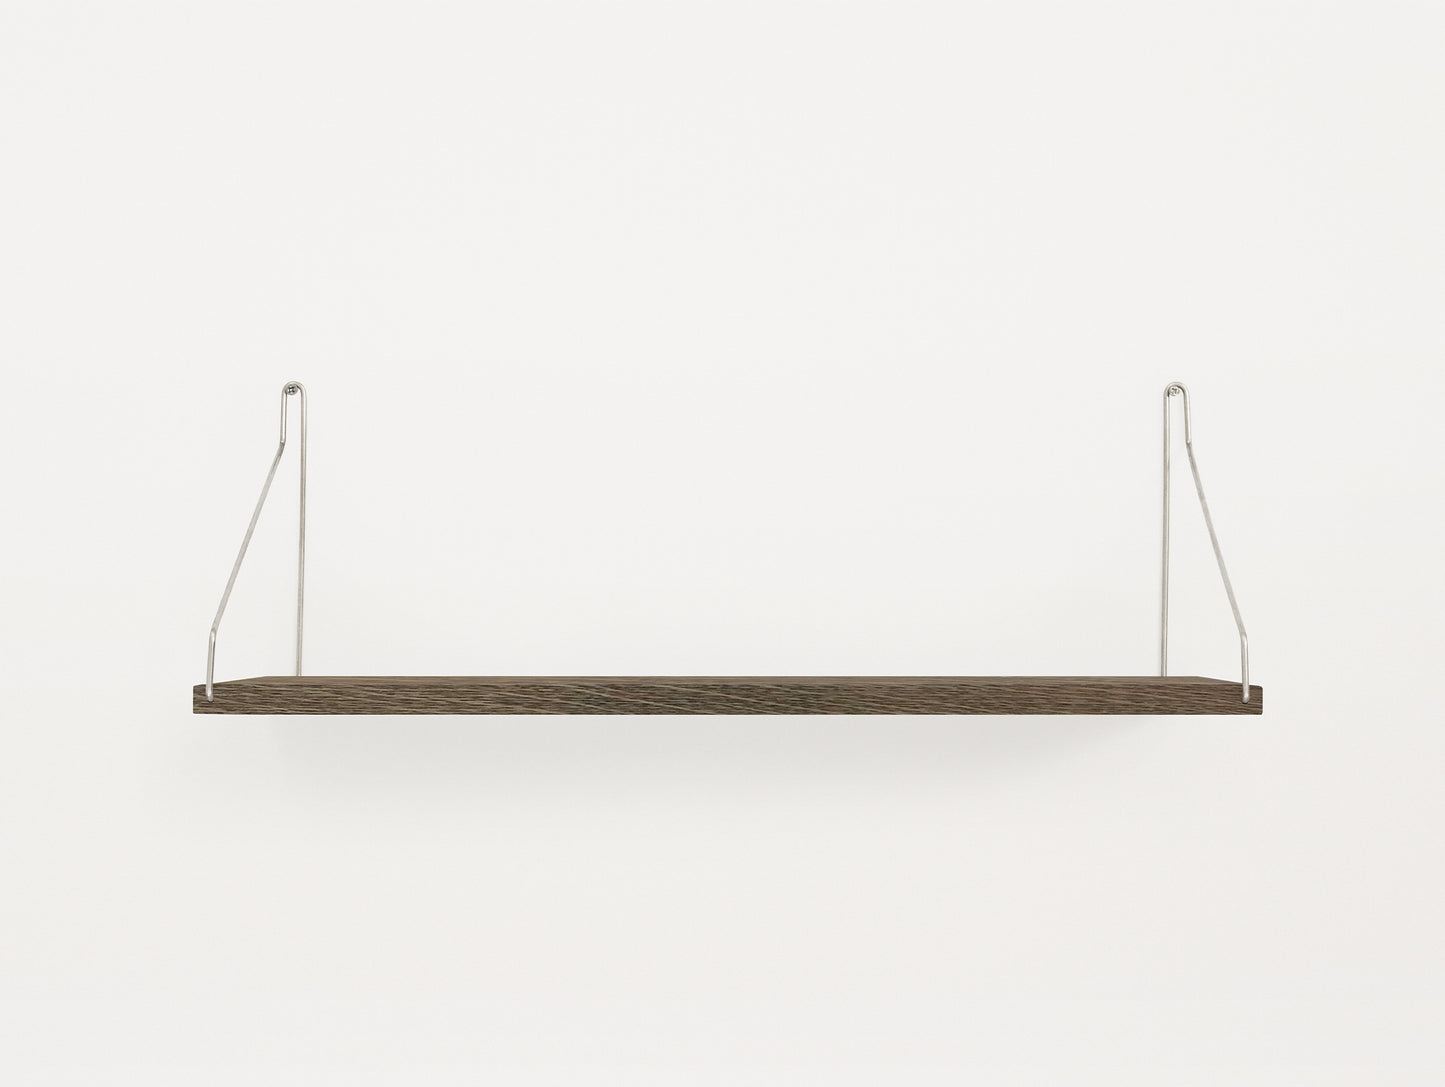 Shelf by Frama - D20 W60 / Dark Stained Oak / Stainless Steel Brackets